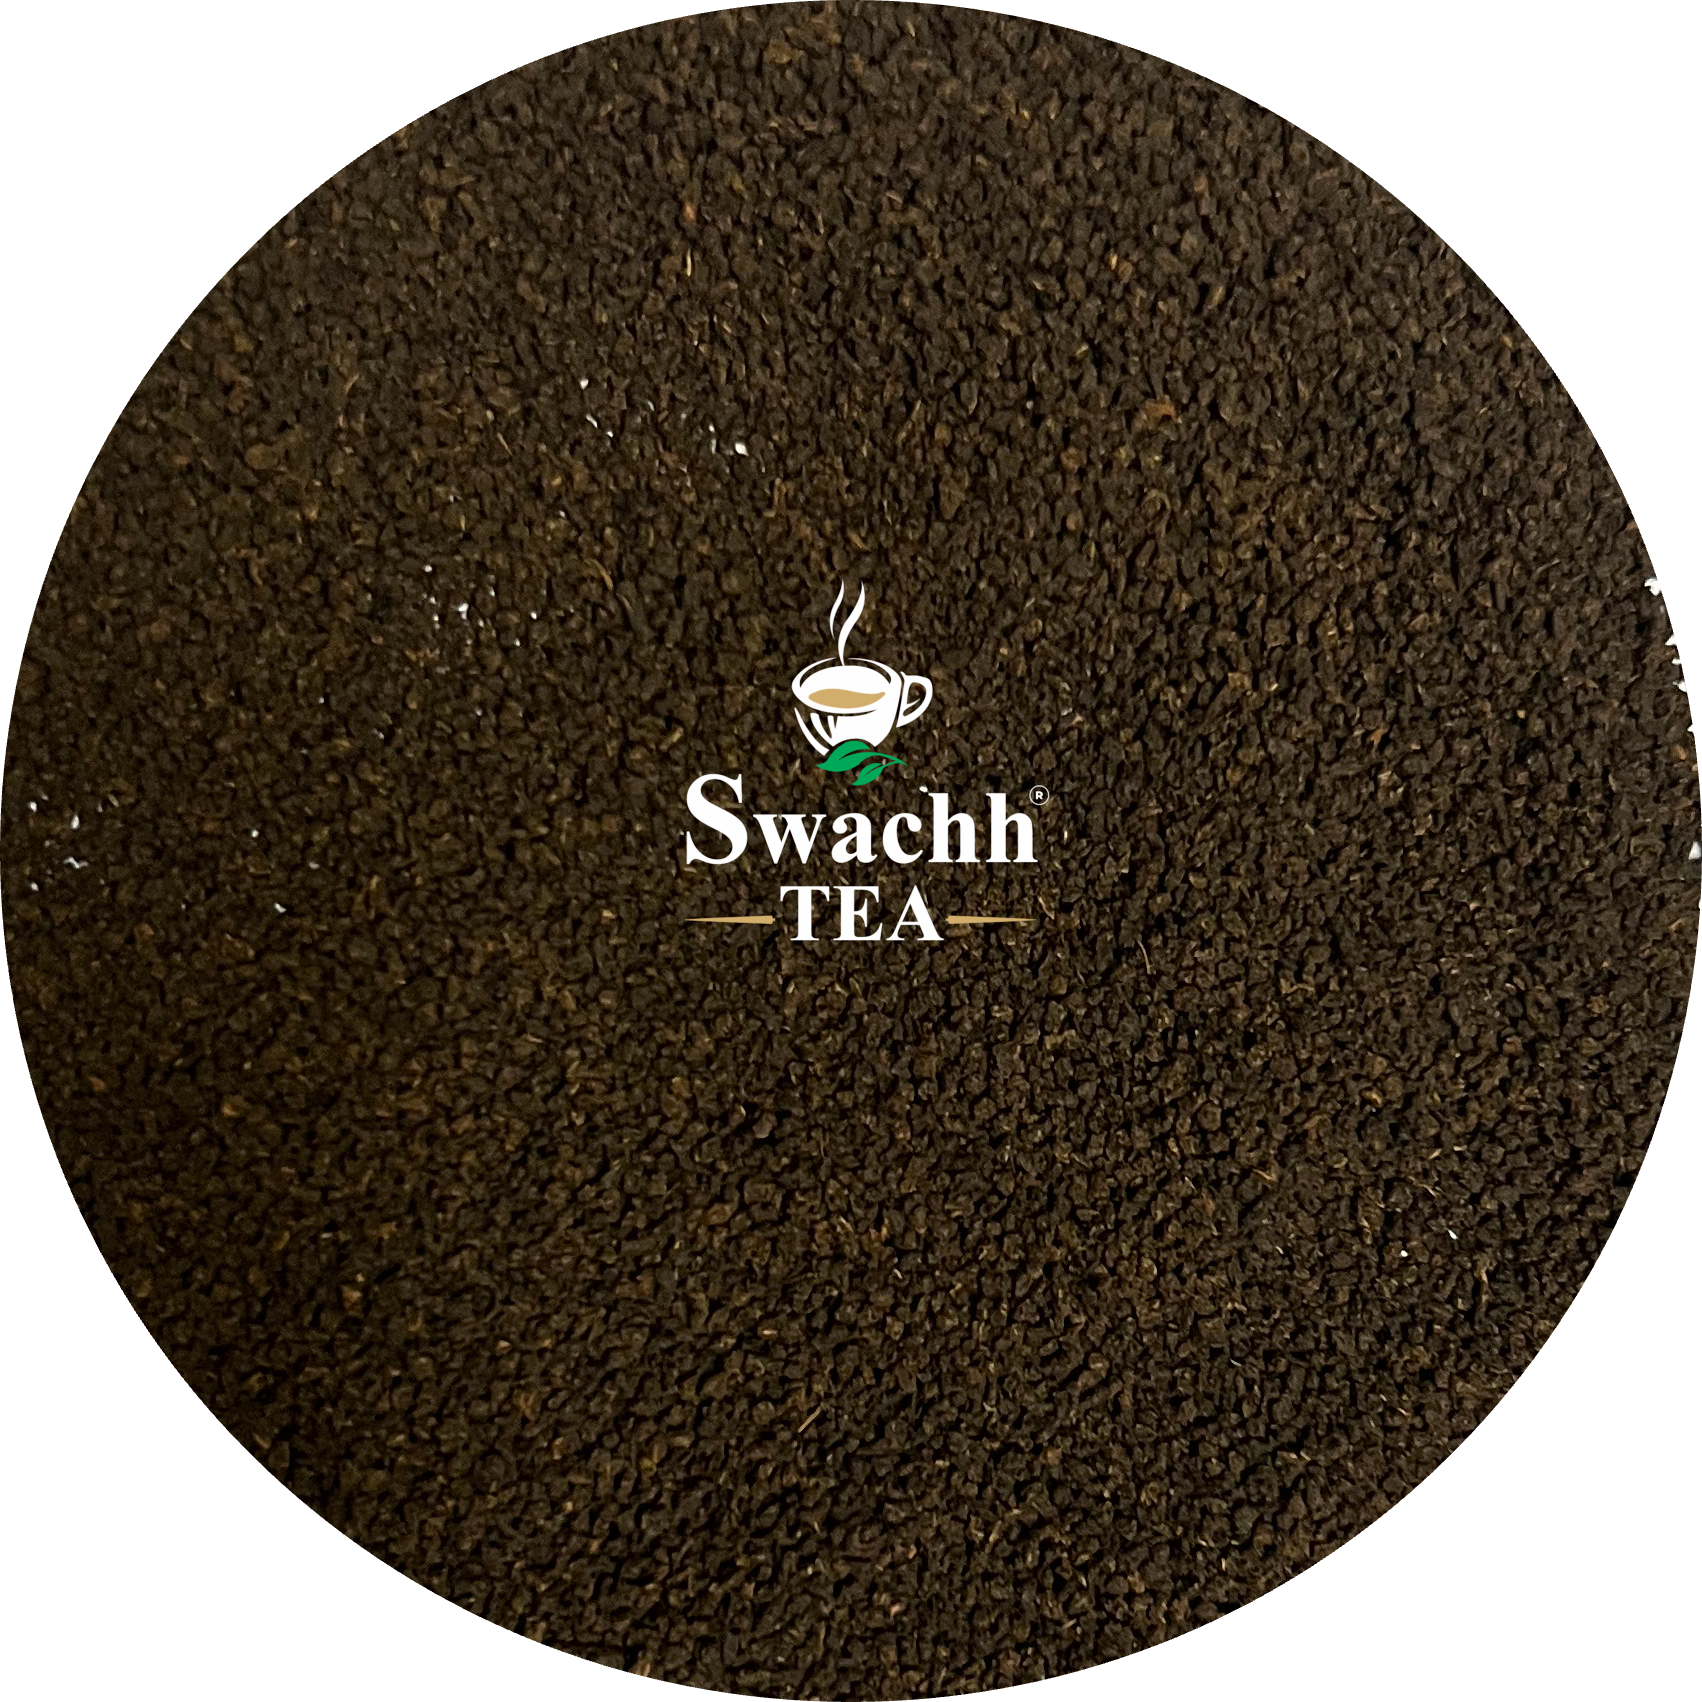 CTC tea (chai) wholesale pack (Pure assam blend)